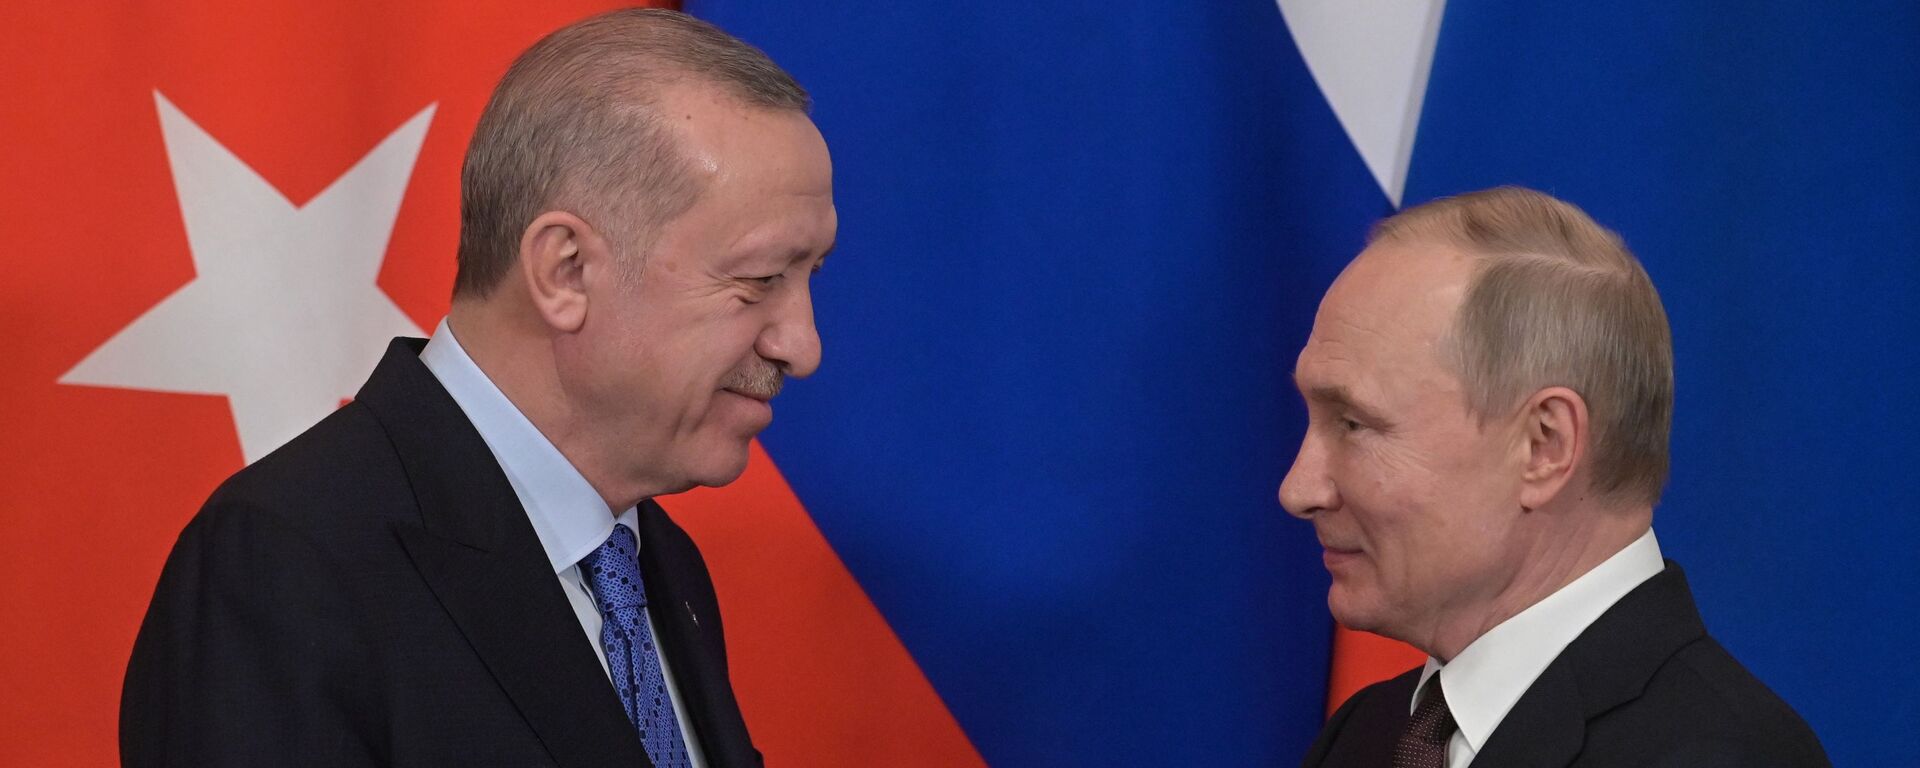 Президент РФ В. Путин встретился с президентом Турции Р. Эрдоганом - Sputnik Абхазия, 1920, 30.09.2021